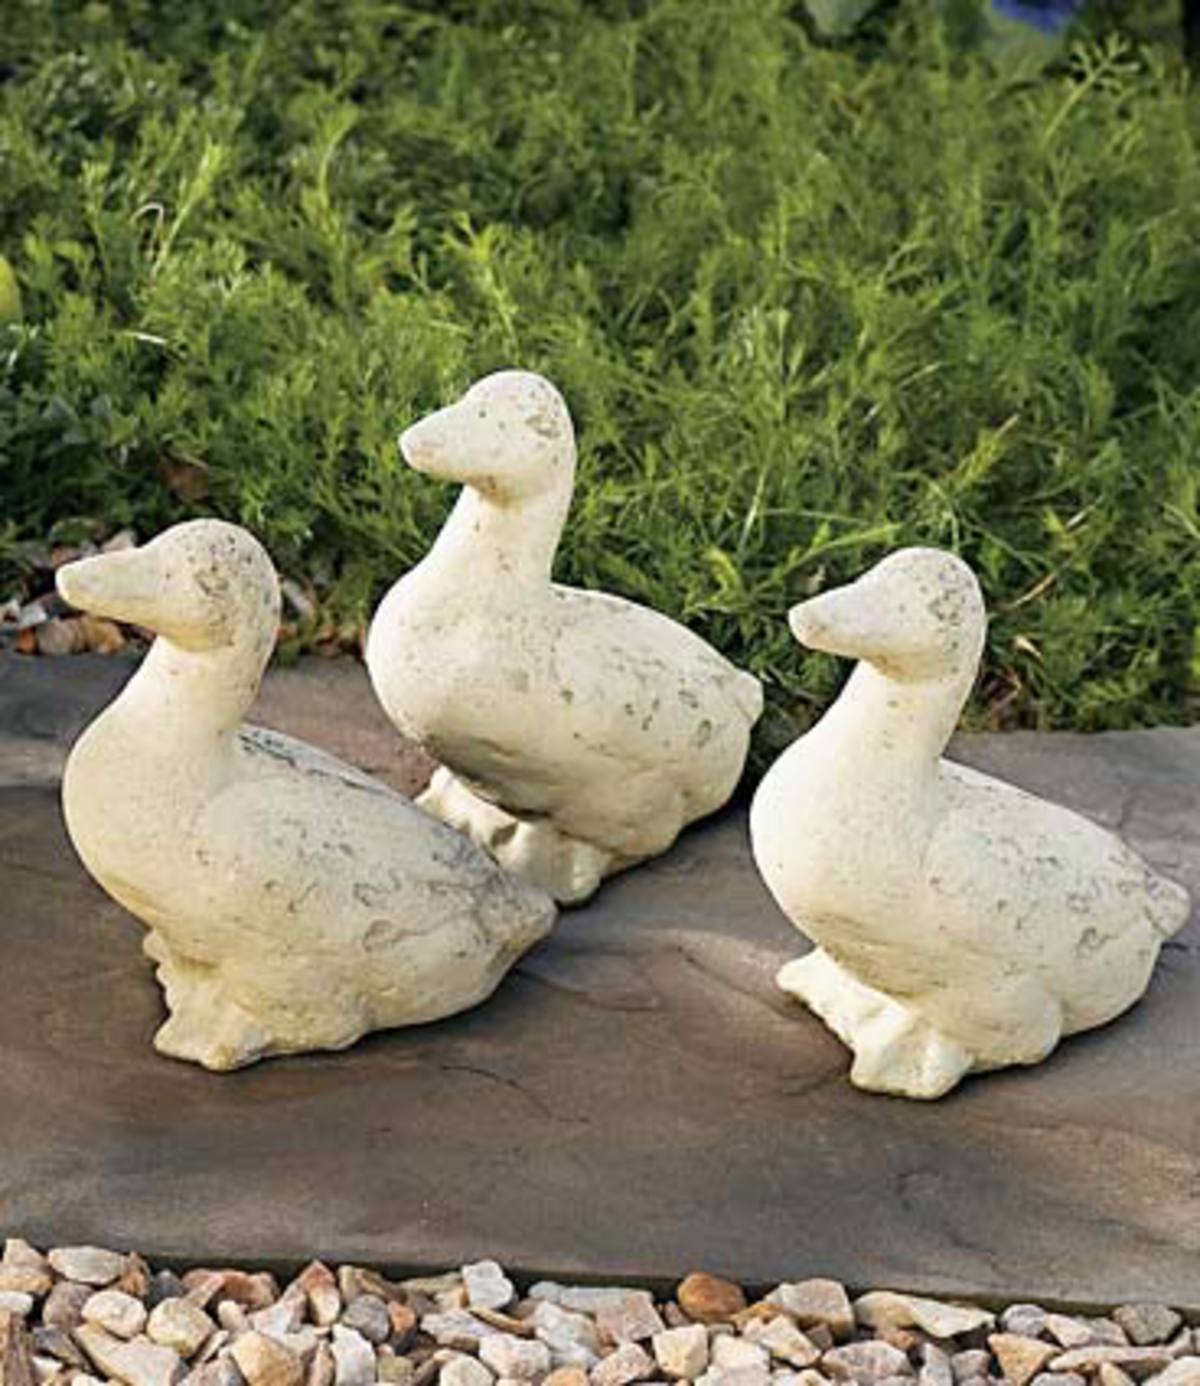 Ducklings, set of 3